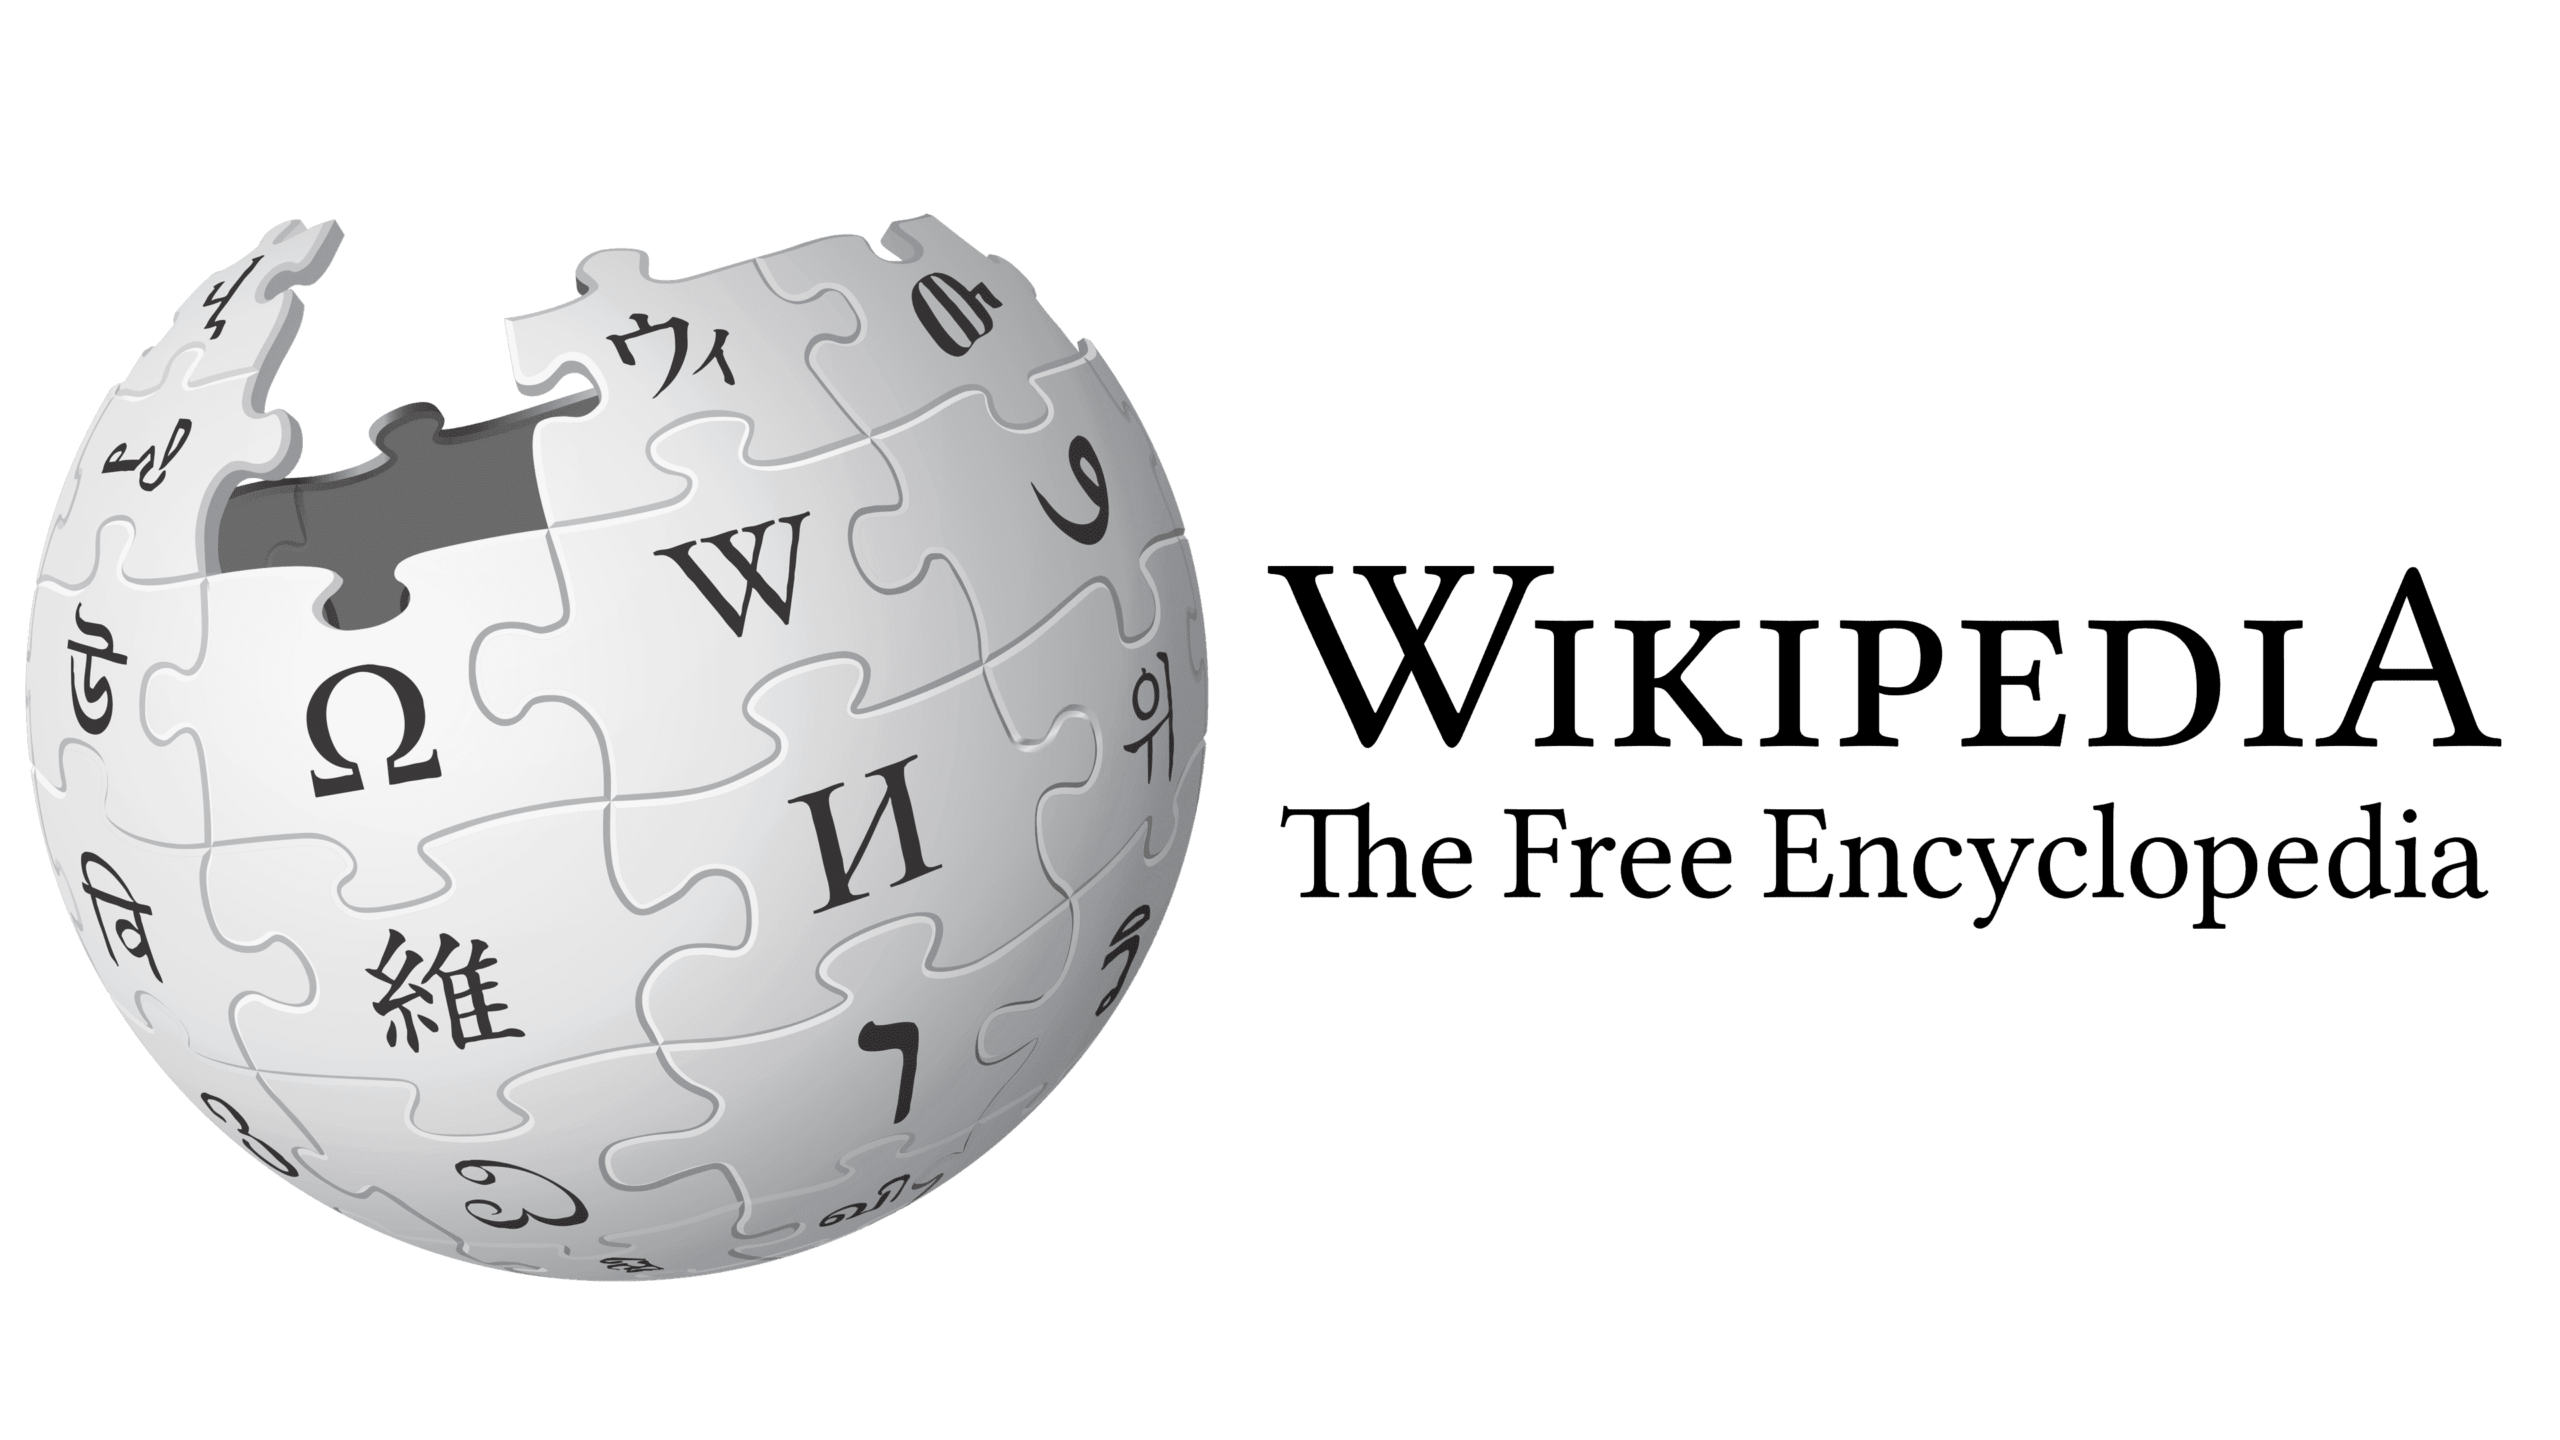 พร็อกซีสำหรับ wikipedia.org